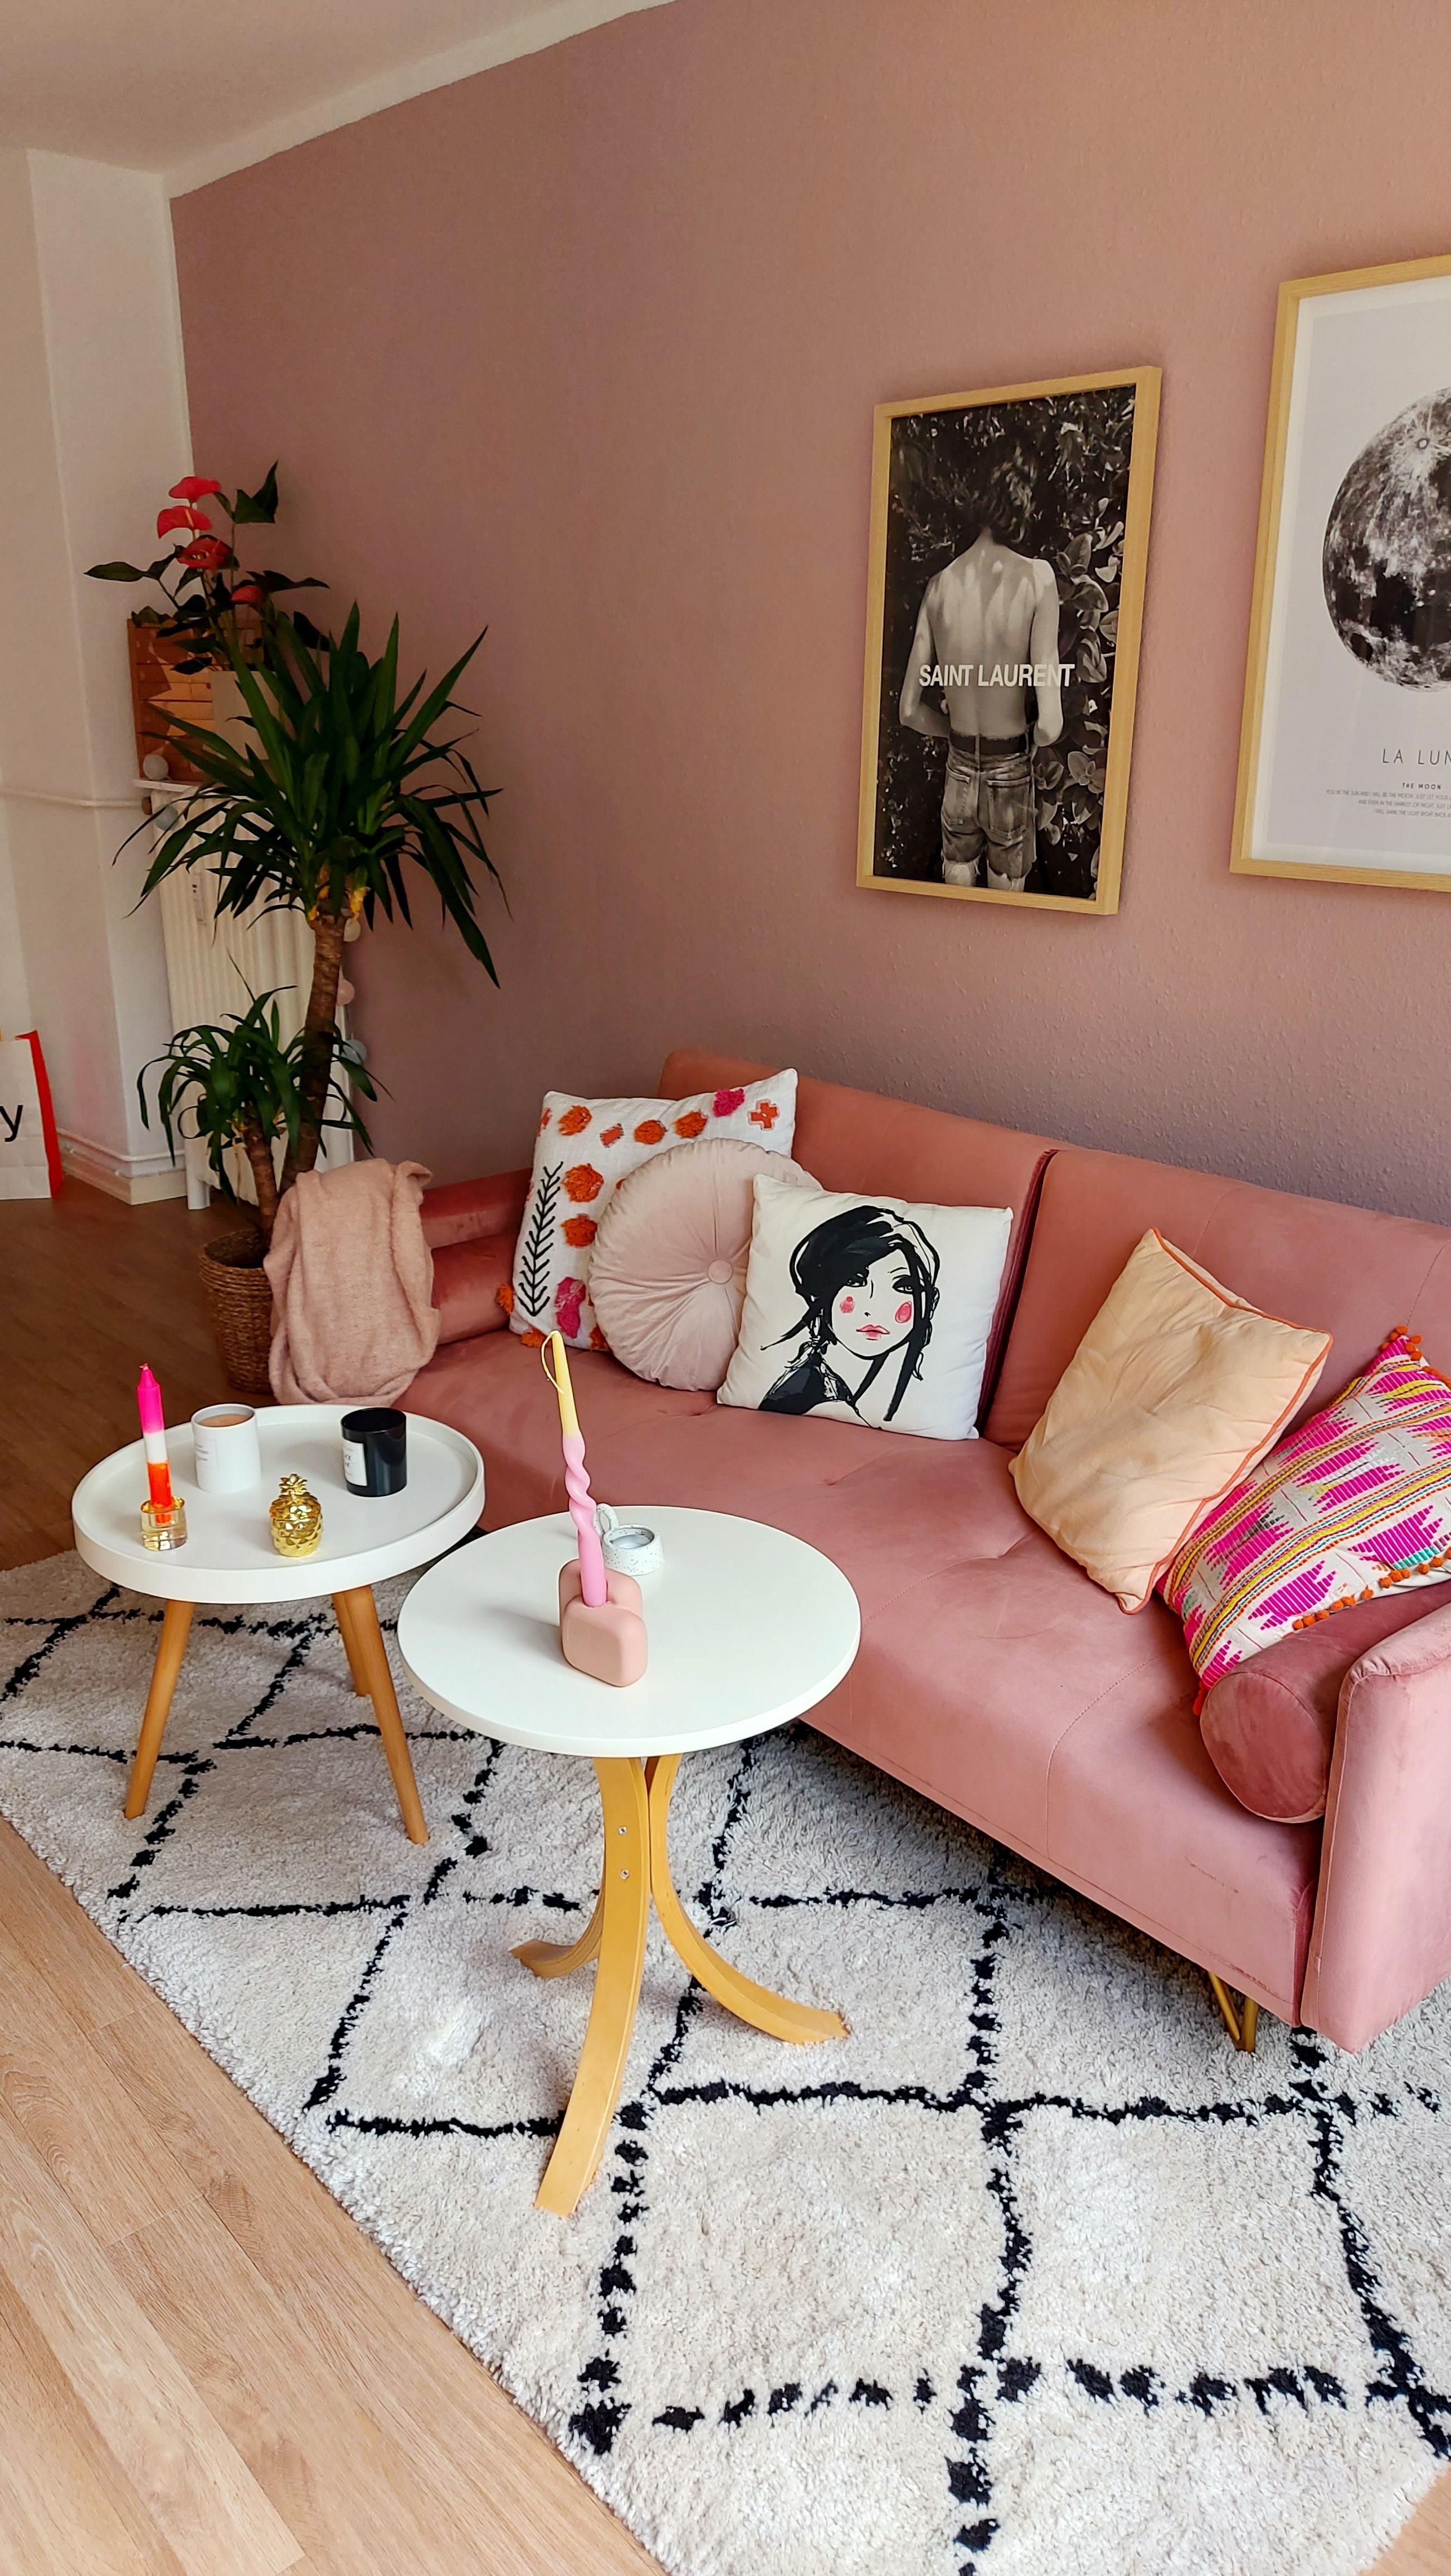 Das Wohnzimmer in Pastell-pink.
#Wohnzimmer #sklum #pink #Pastellfarben #pastell #hamburg #Eimsbüttel #saintlaurent 